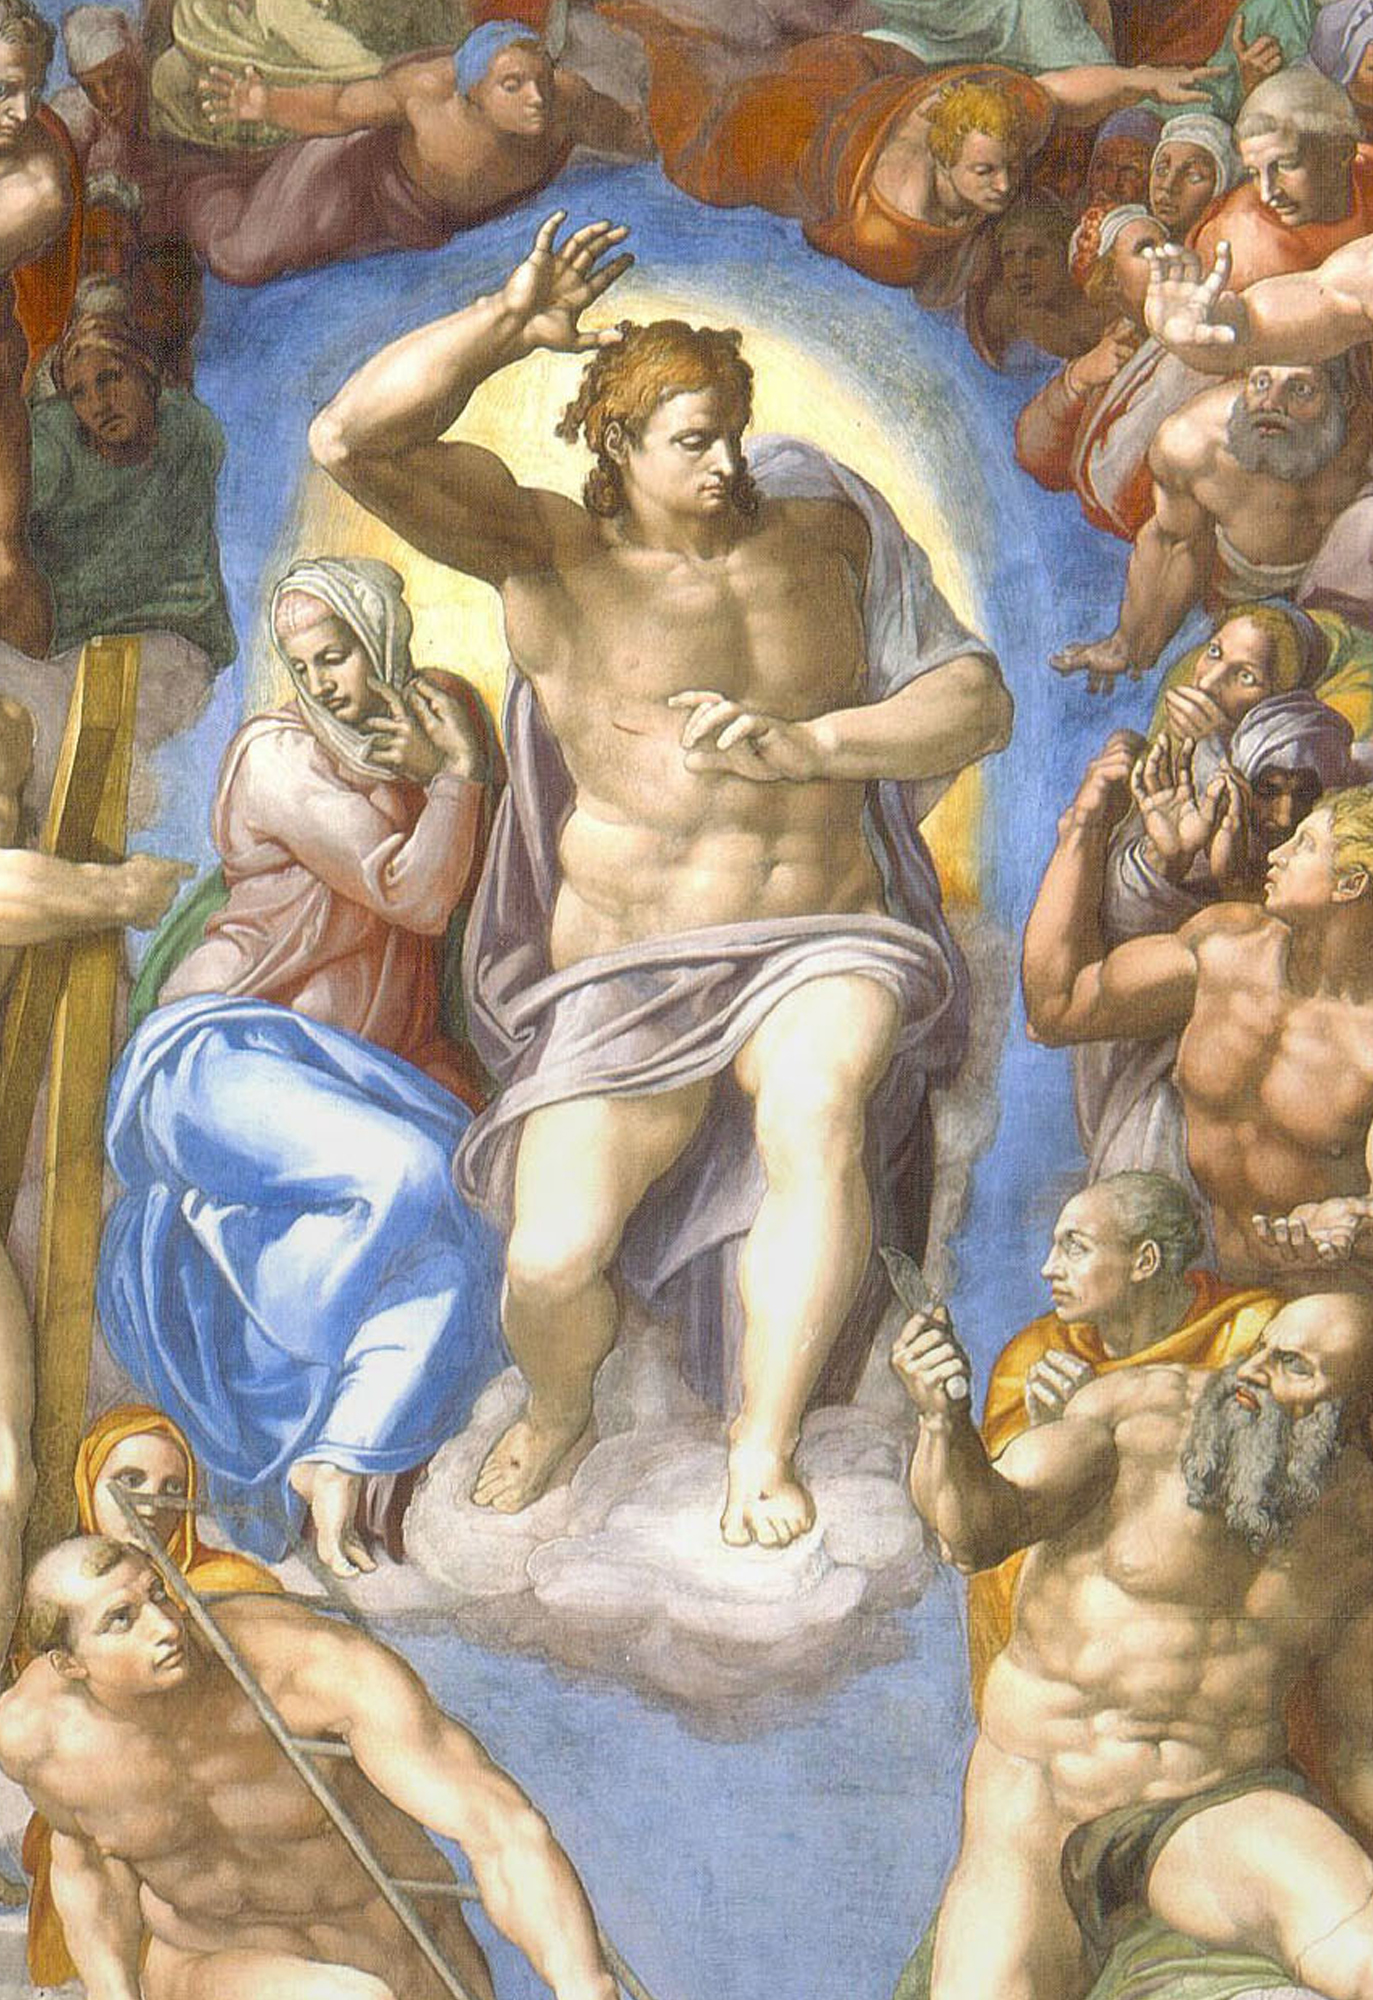 Detalles de los frescos de La Capilla sixtina del Vaticano-michelangelo_-_giudizio_universale_-_gesu_cristo